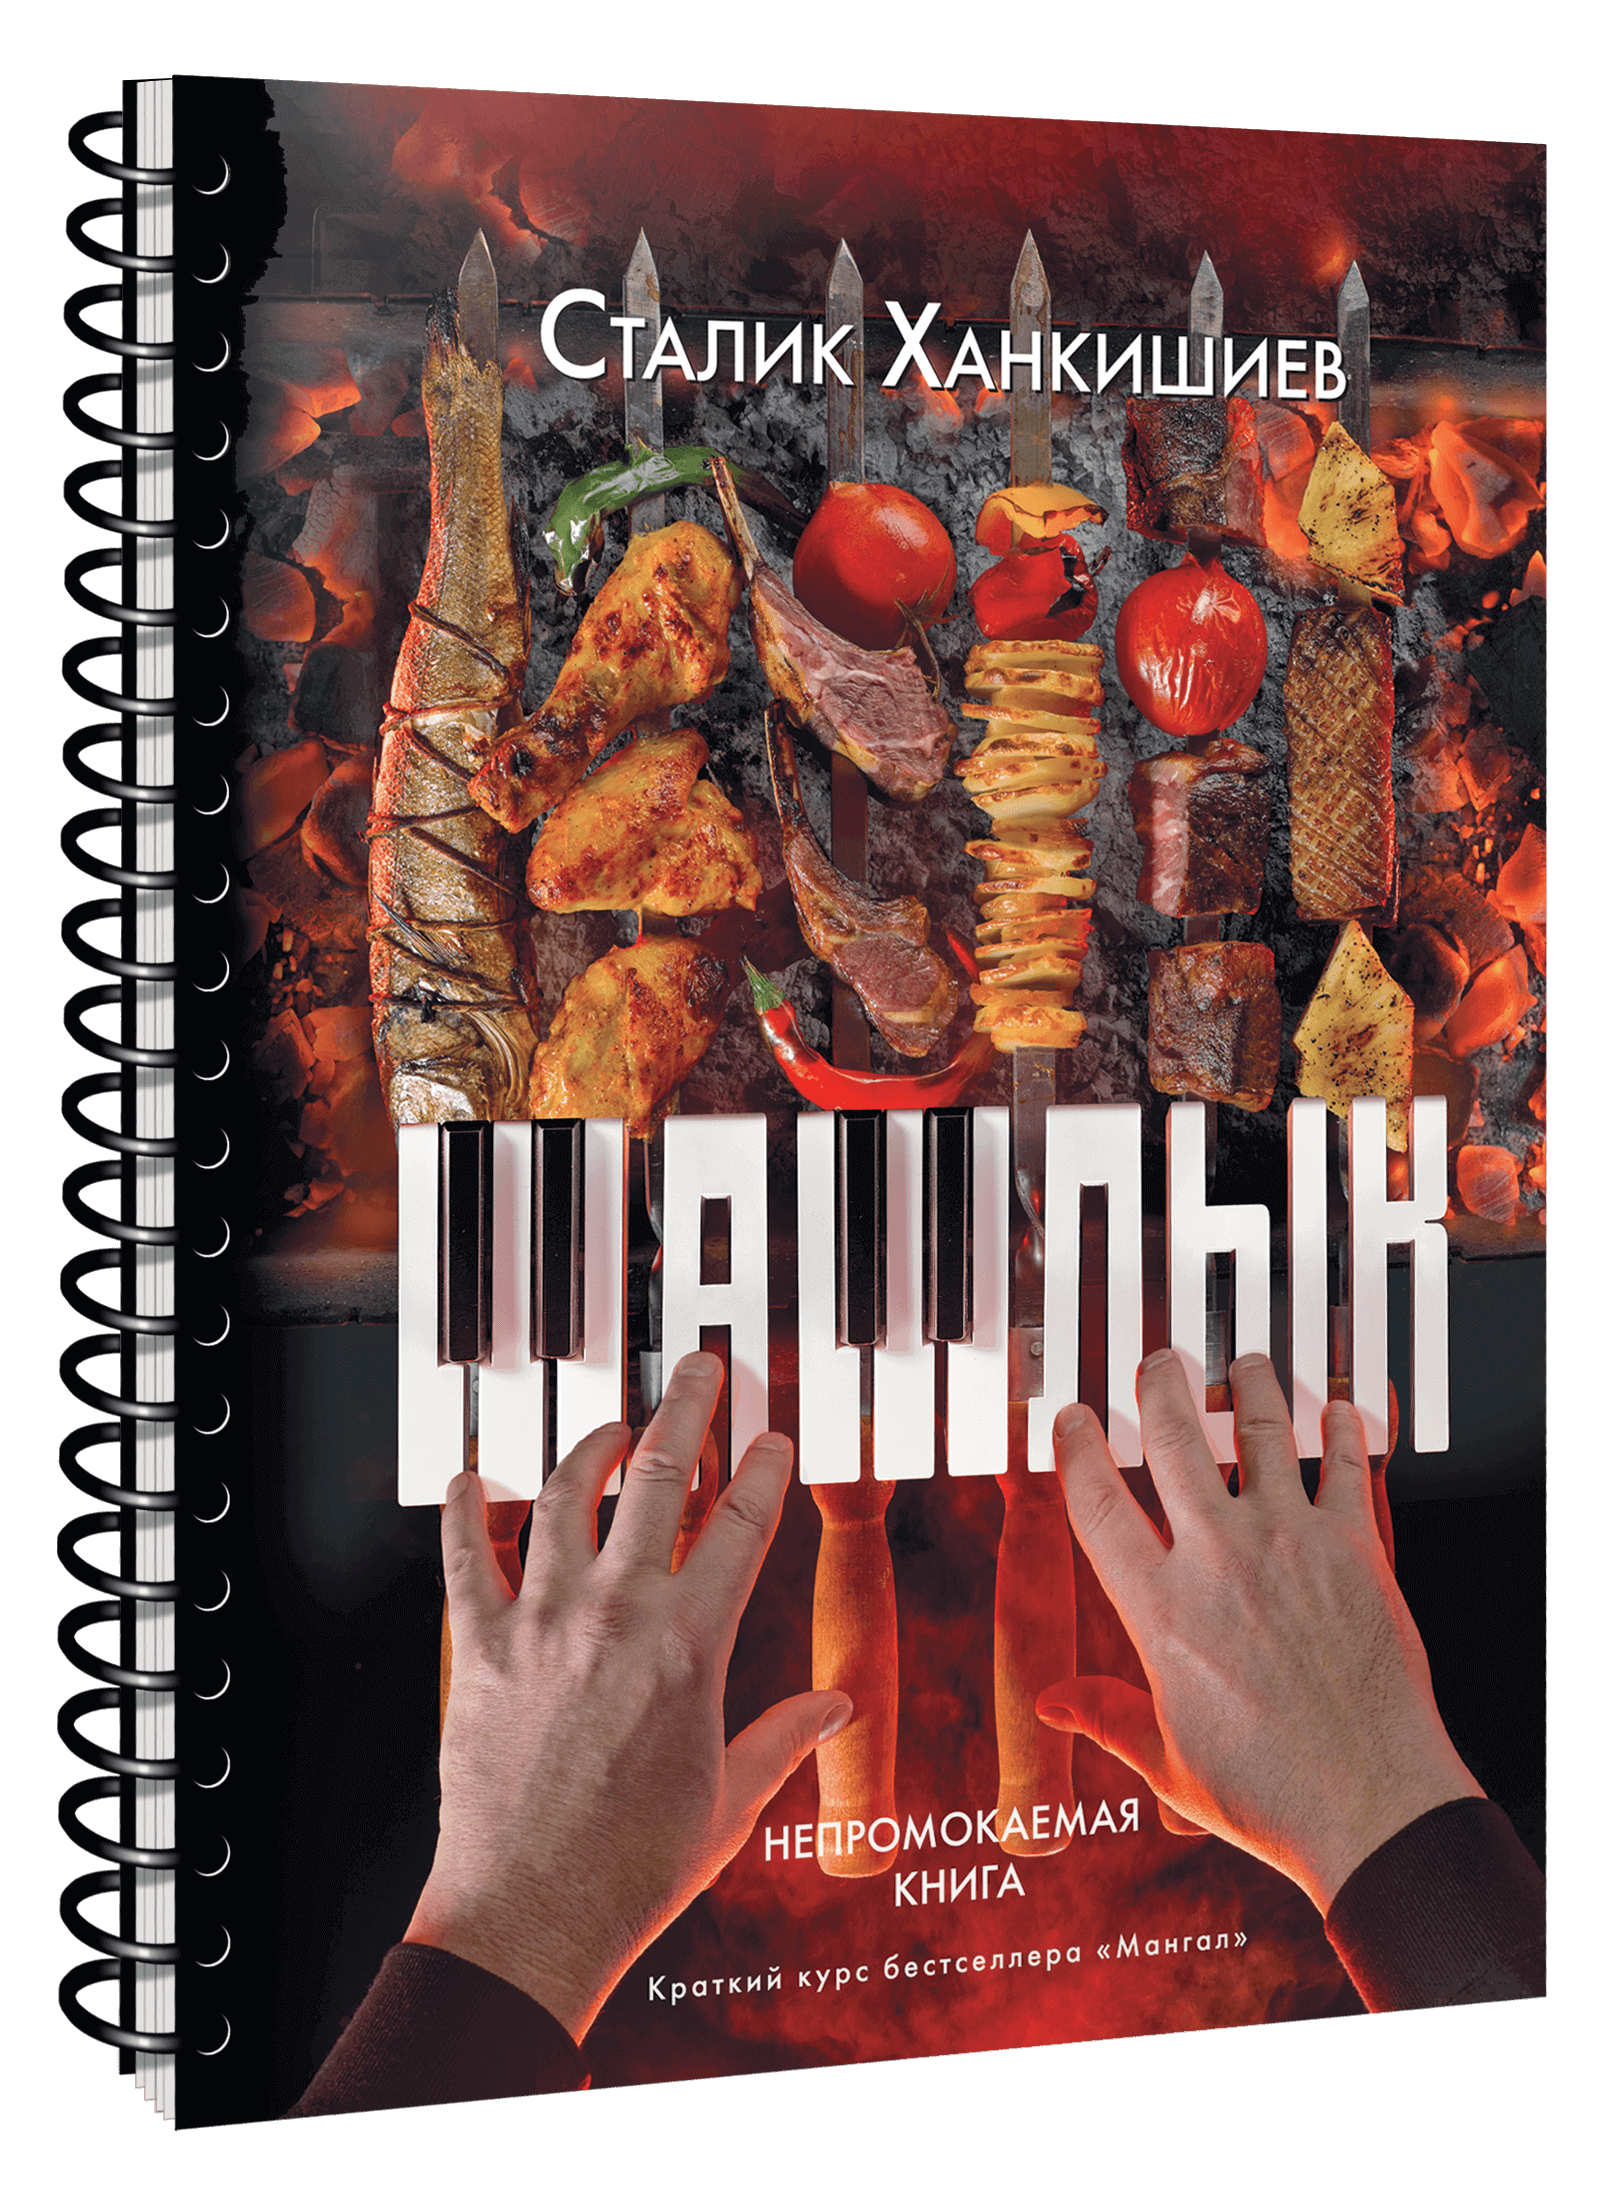 Сталик Ханкишиев выпустил непромокаемую книгу для сезона шашлыков